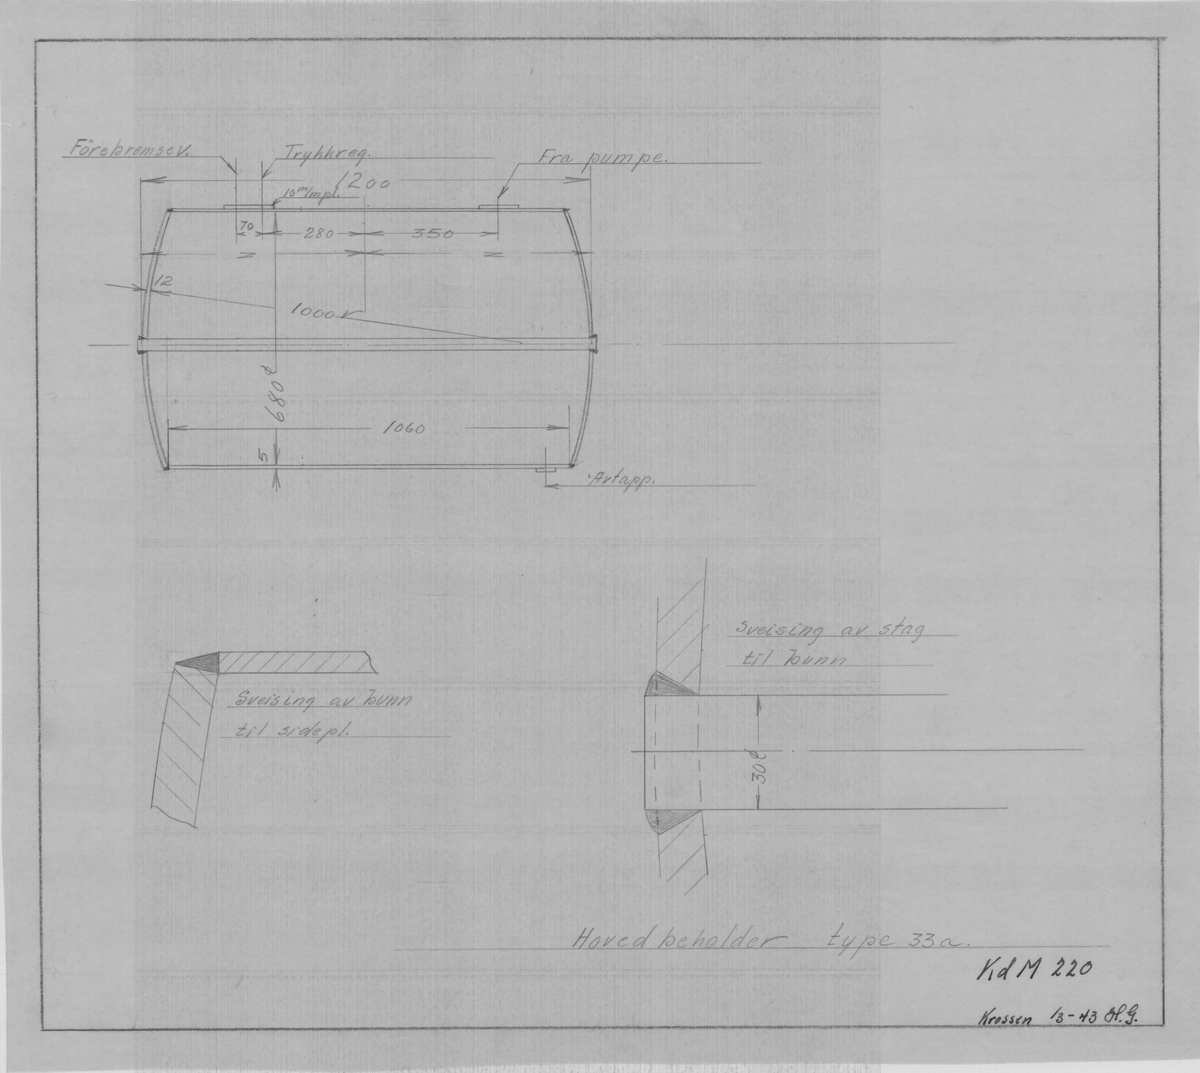 Arbeidstegning på kalkerpapir av hovedbeholder lok type 33a (original)
KdM 220
Kristiansand ?/3-43
Format A4